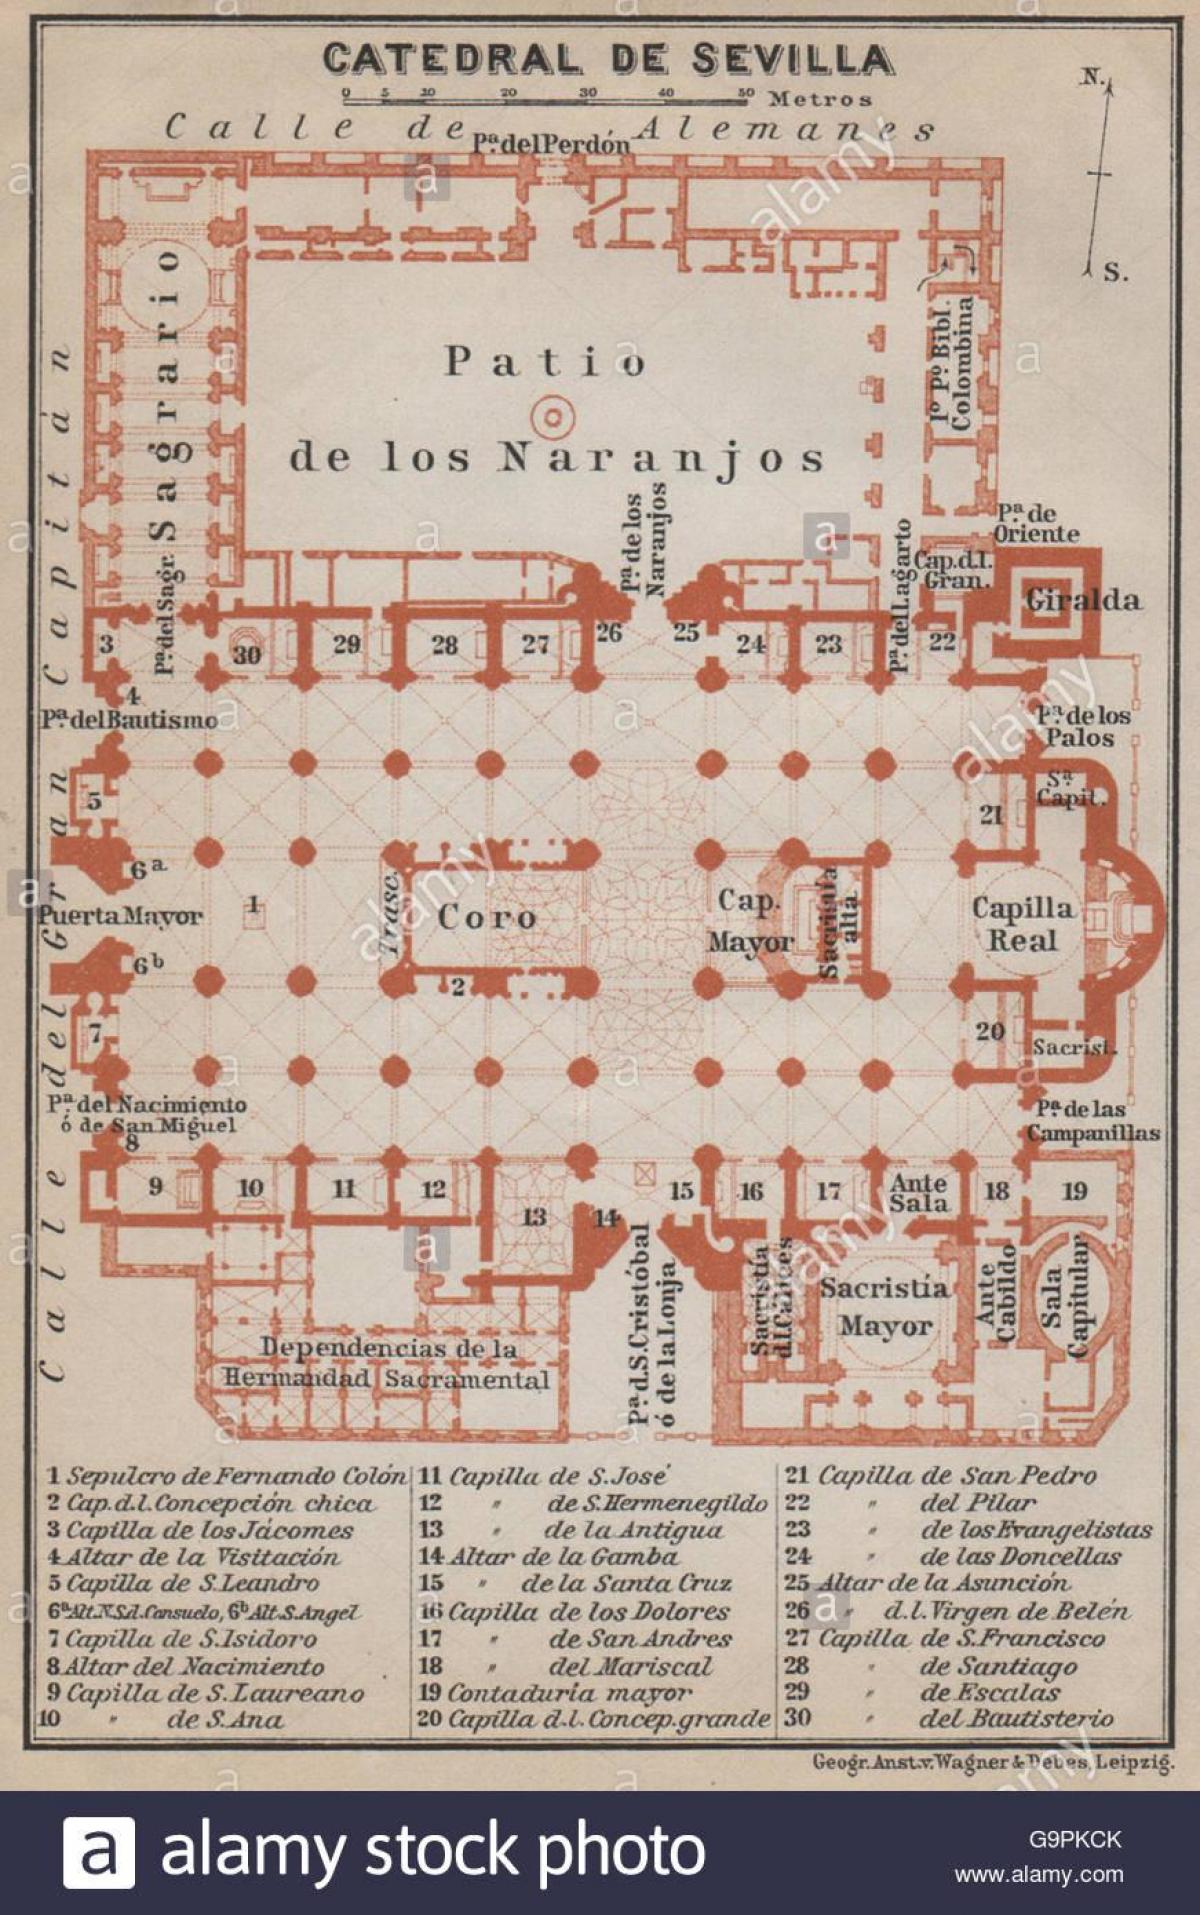 mapa de la catedral de Sevilla